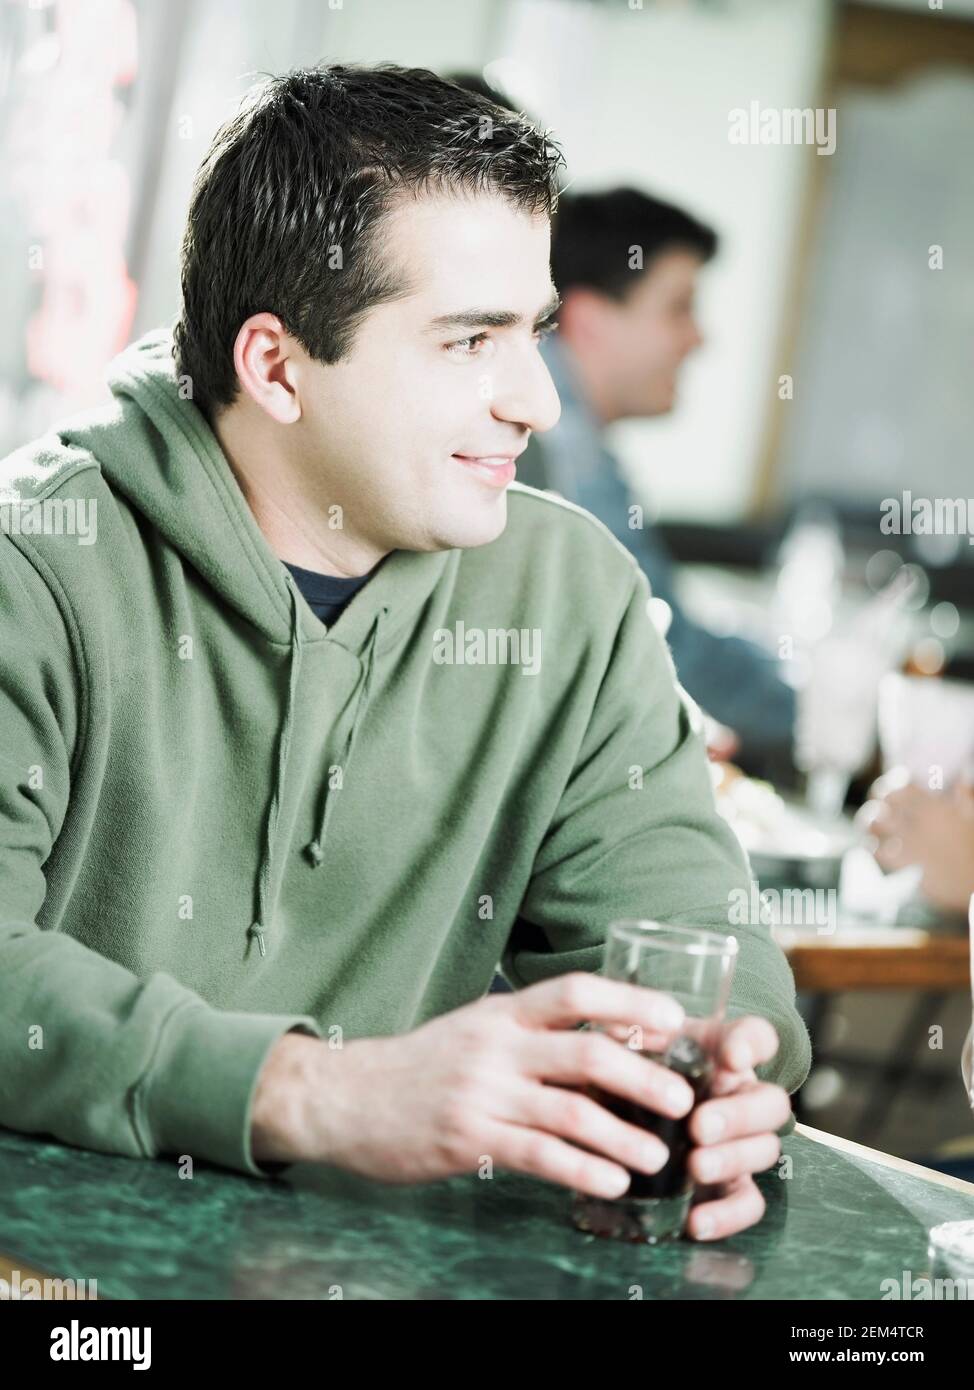 Nahaufnahme eines jungen Mannes, der ein Glas Wein in der Hand hält In einem Restaurant Stockfoto